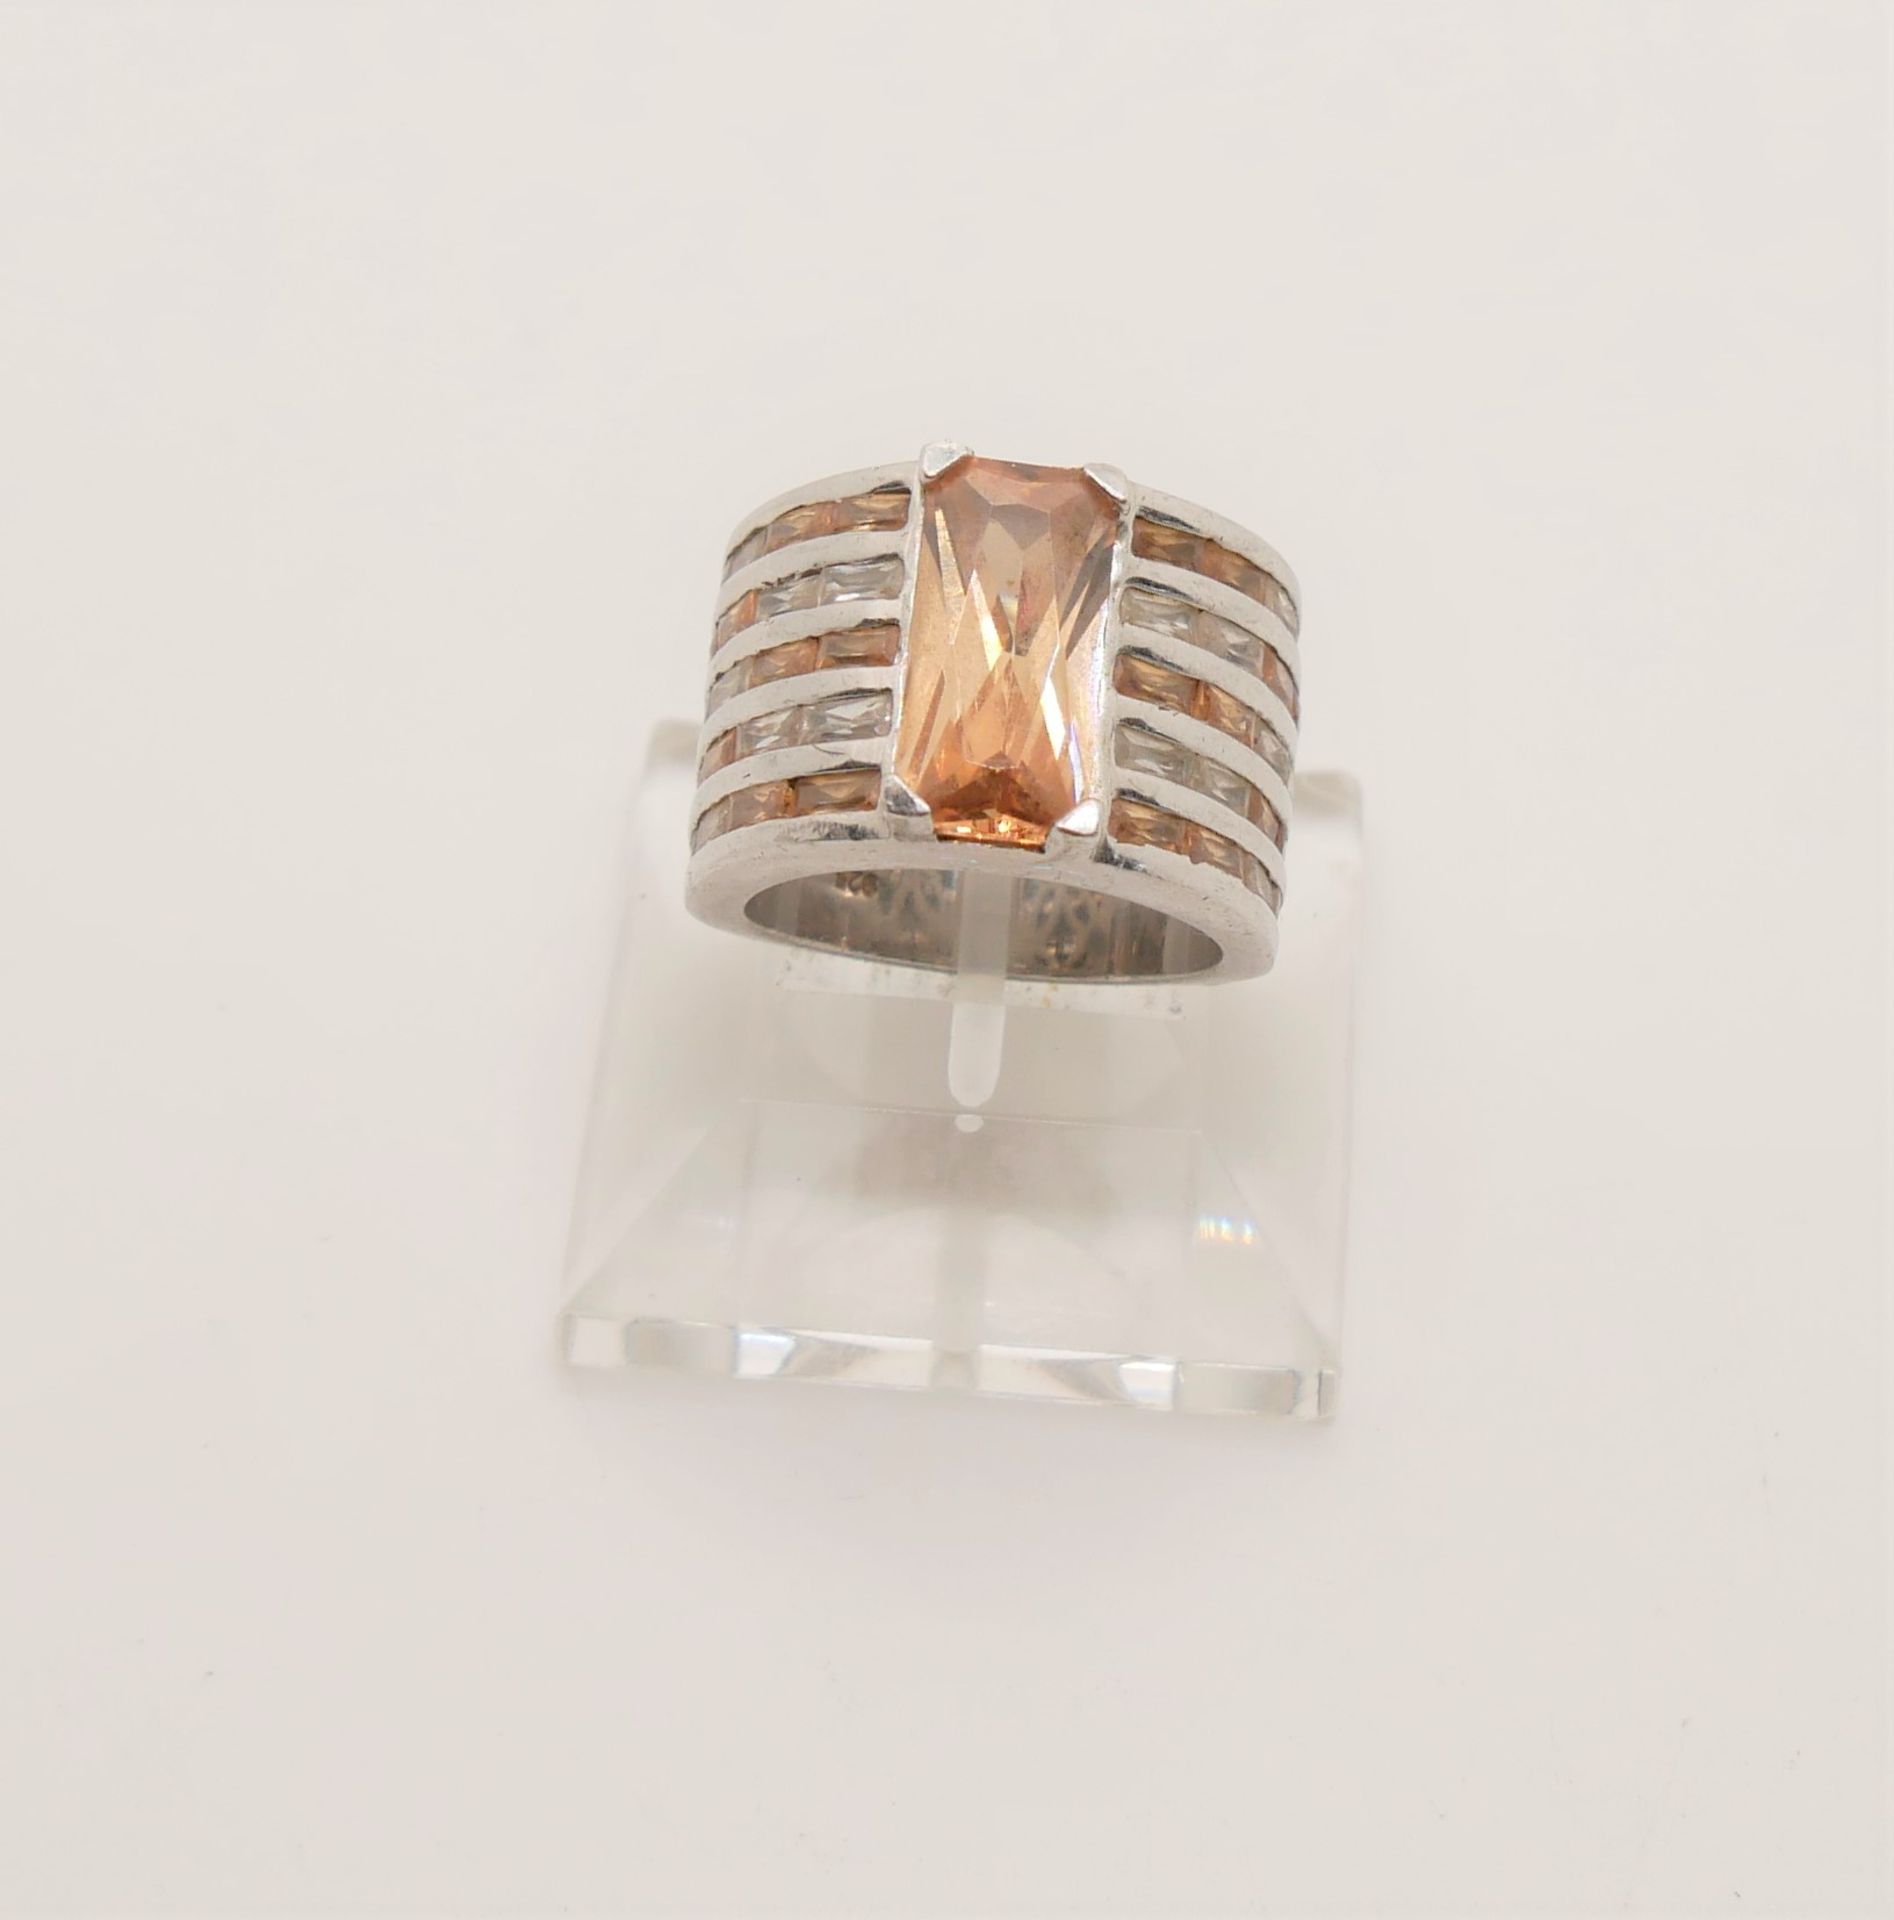 Damenring, 925er Silber, besetzt mit Glassteinen. Breite Ringschiene. Ringgröße 60